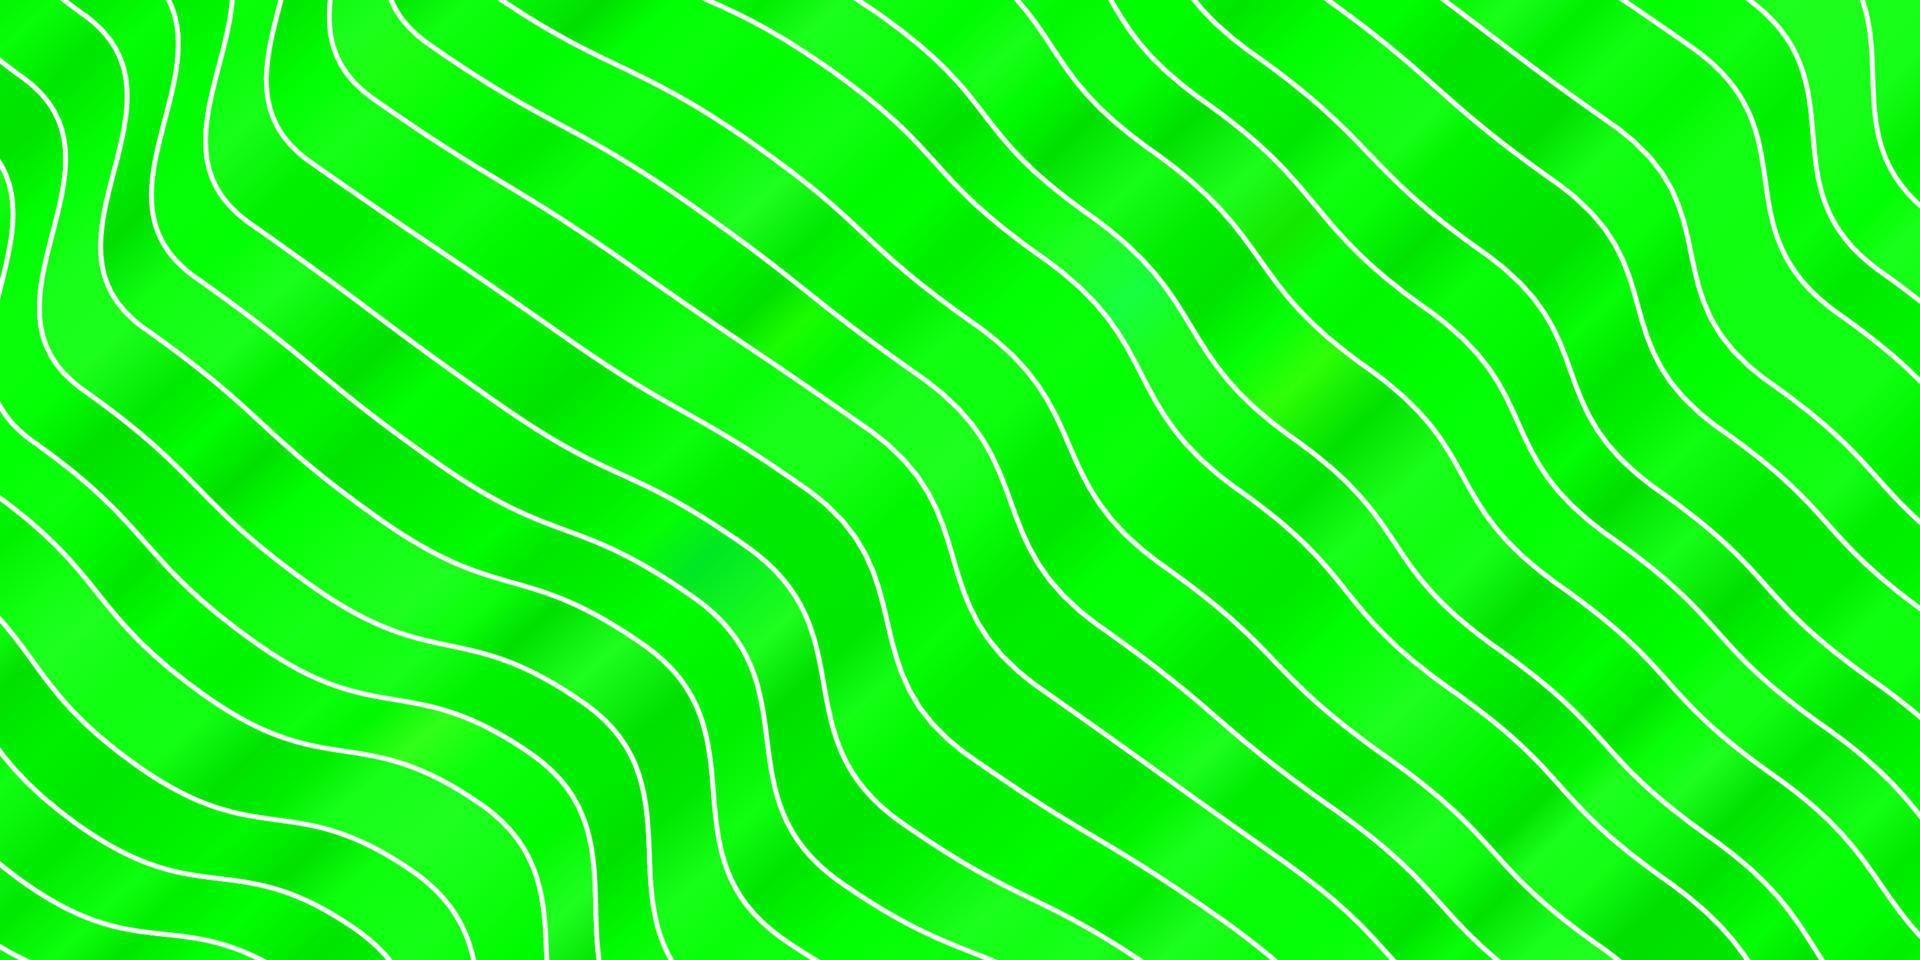 textura de vetor verde claro com arco circular.